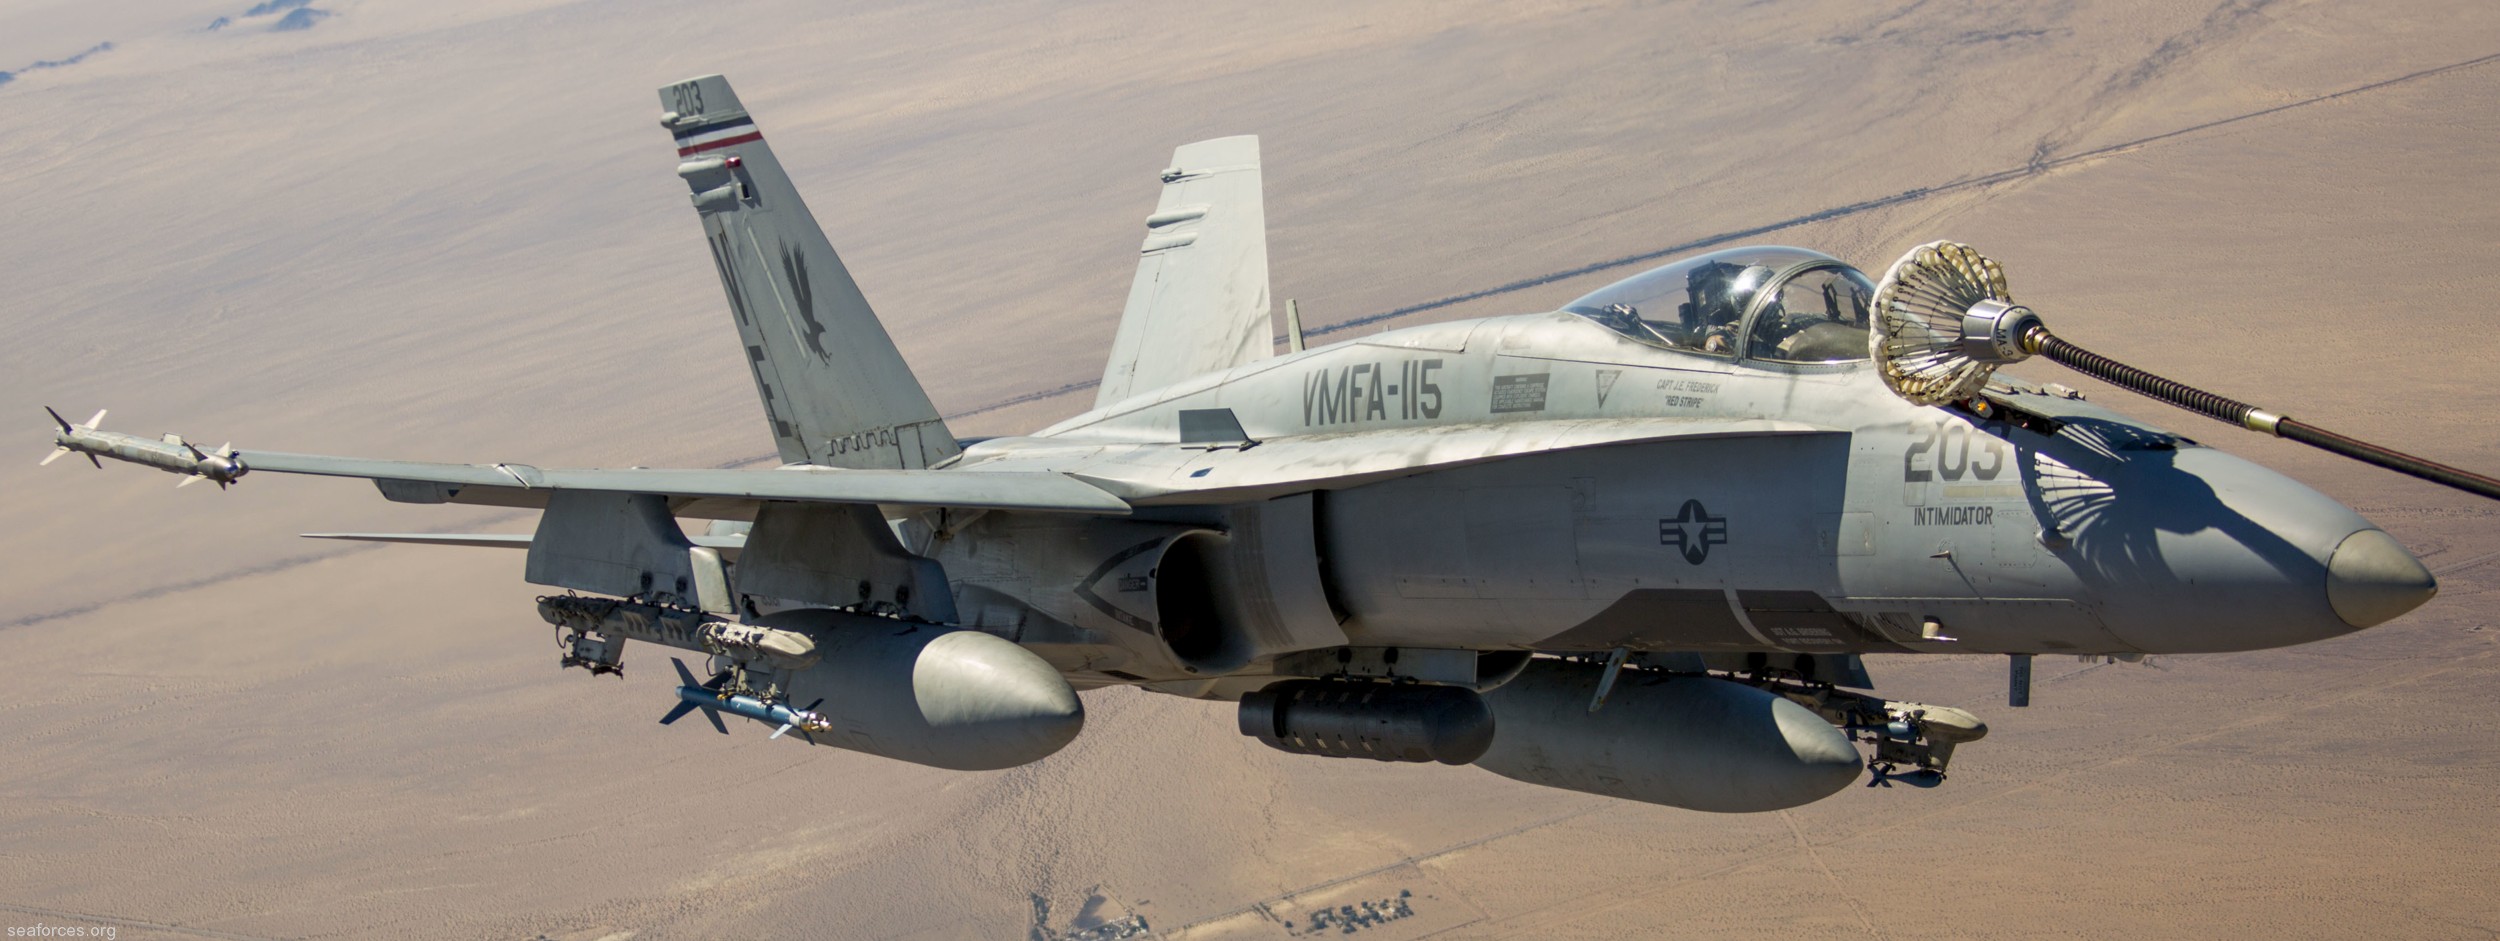 vmfa-115 silver eagles marine fighter attack squadron f/a-18a+ hornet 96